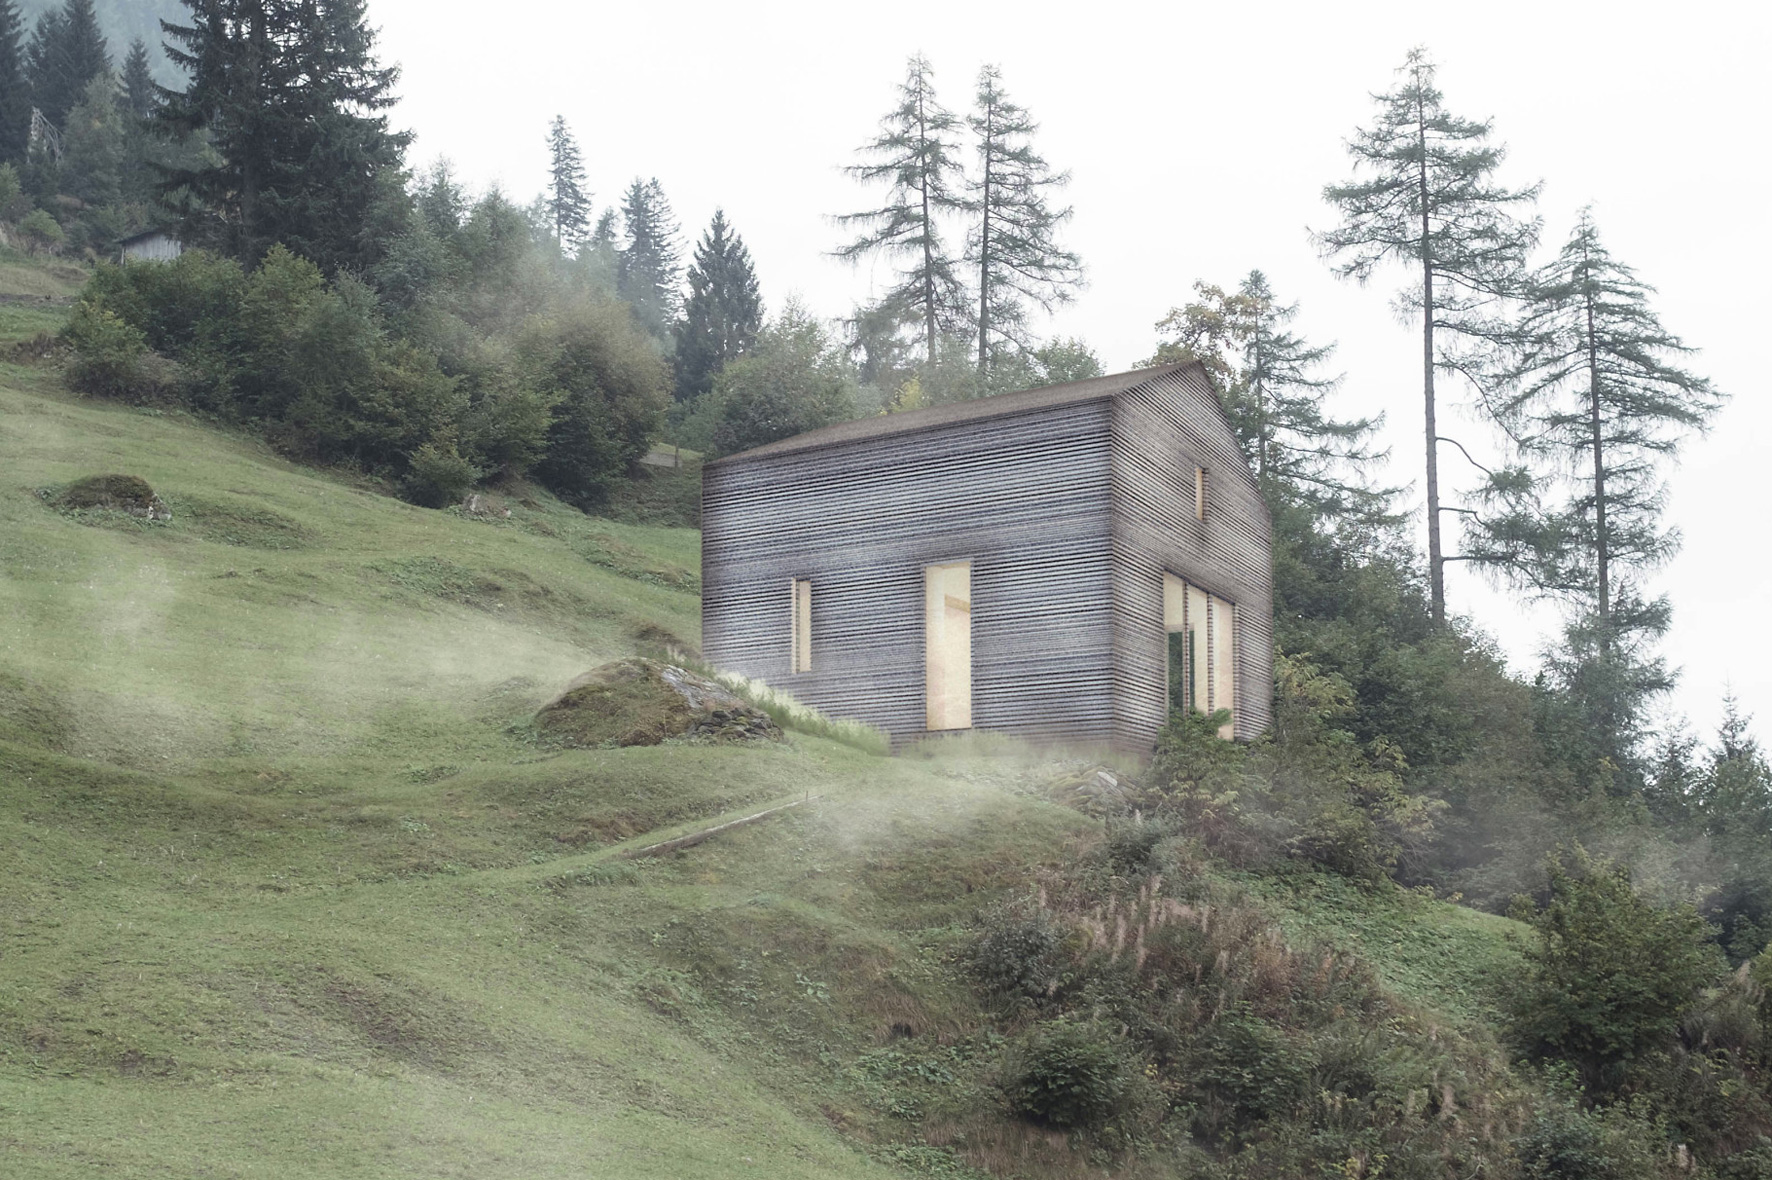 Entwurf für ein Haus für eine Person mit dem Holzbausystem "SimpliciDIY". © Atelier SLOW